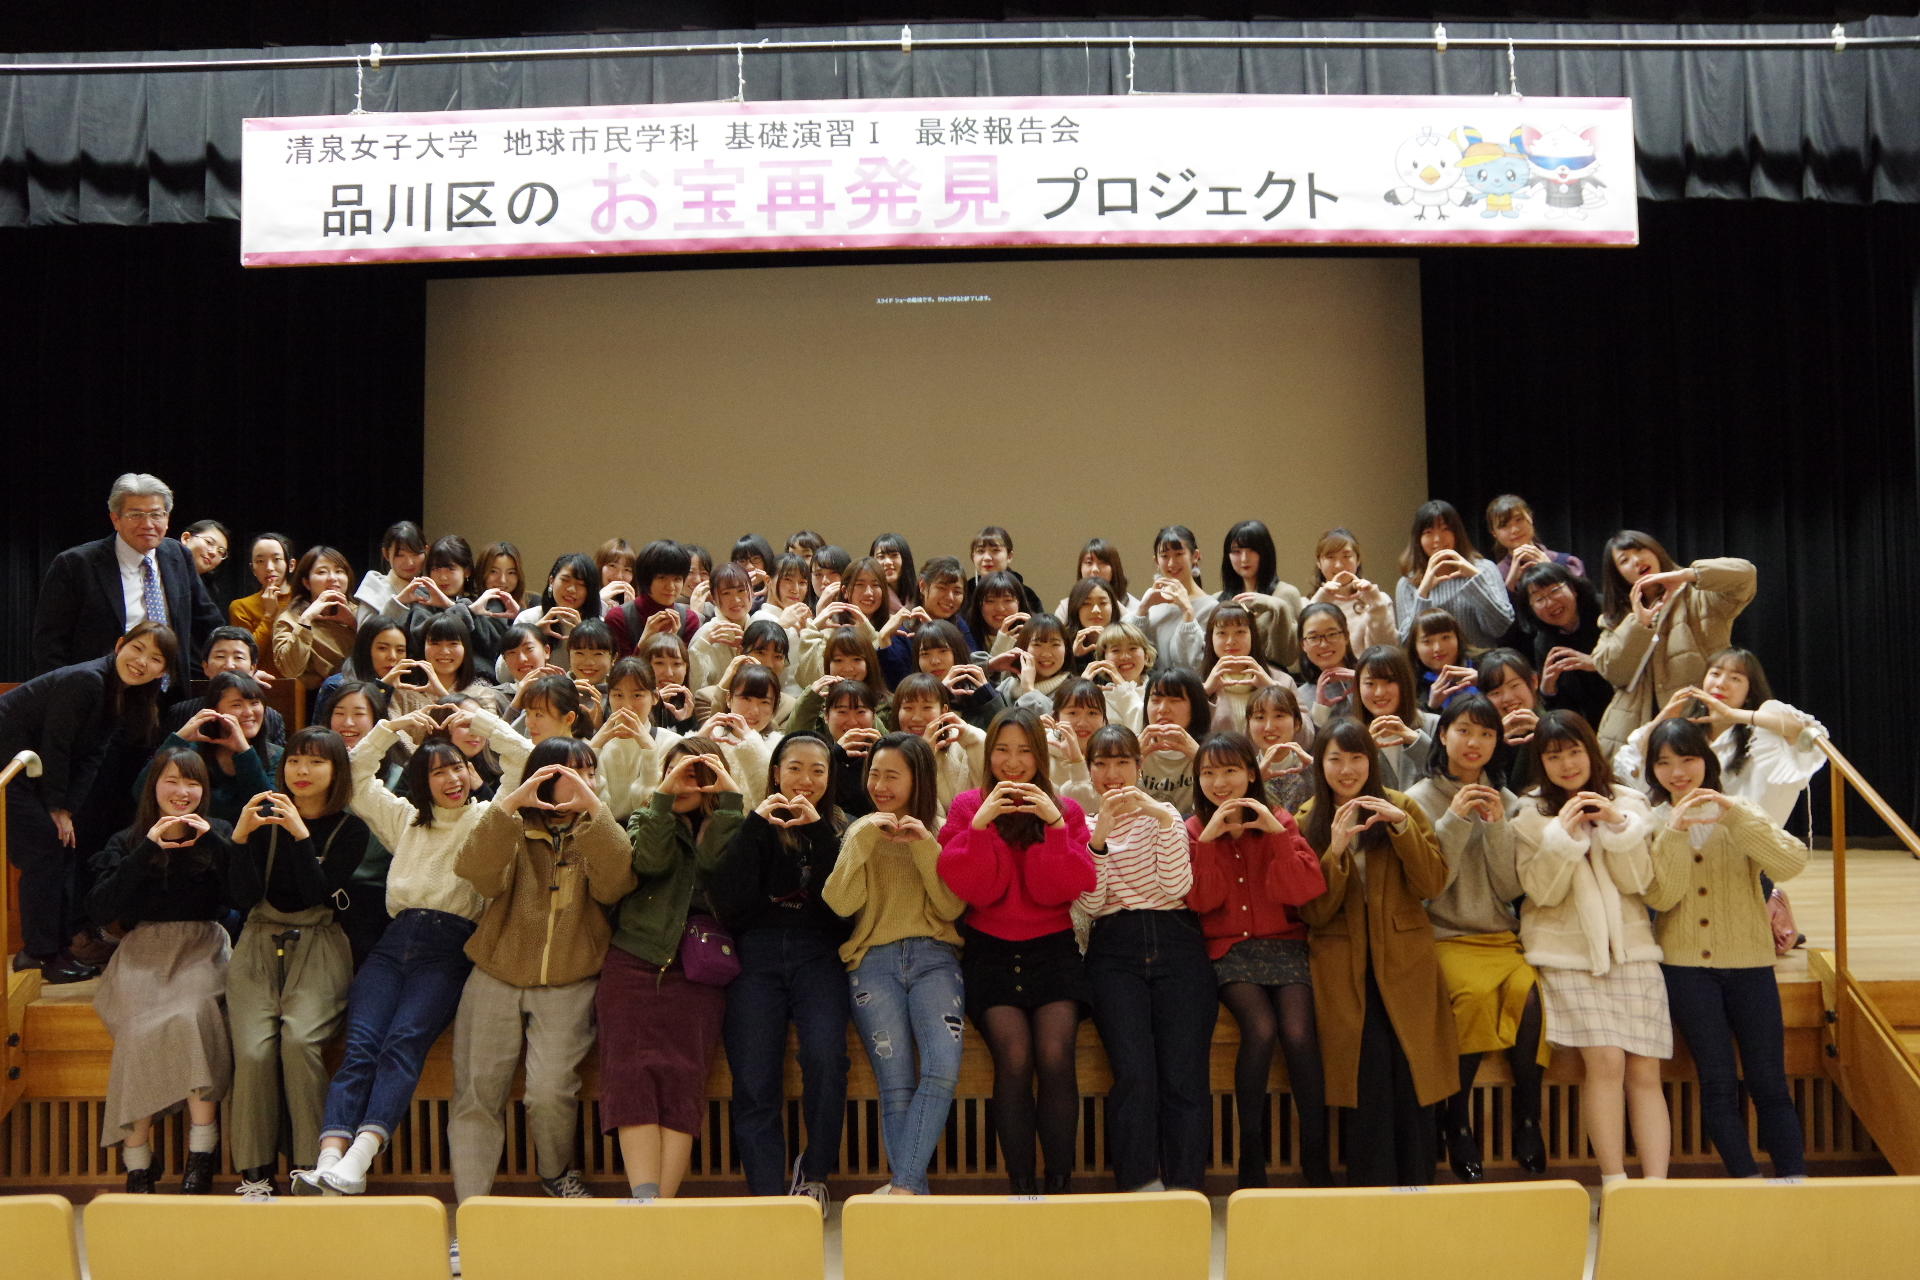 清泉女子大学地球市民学科の学生が品川区との連携授業の最終報告会を実施 -- 京急沿線で地域の「お宝再発見」